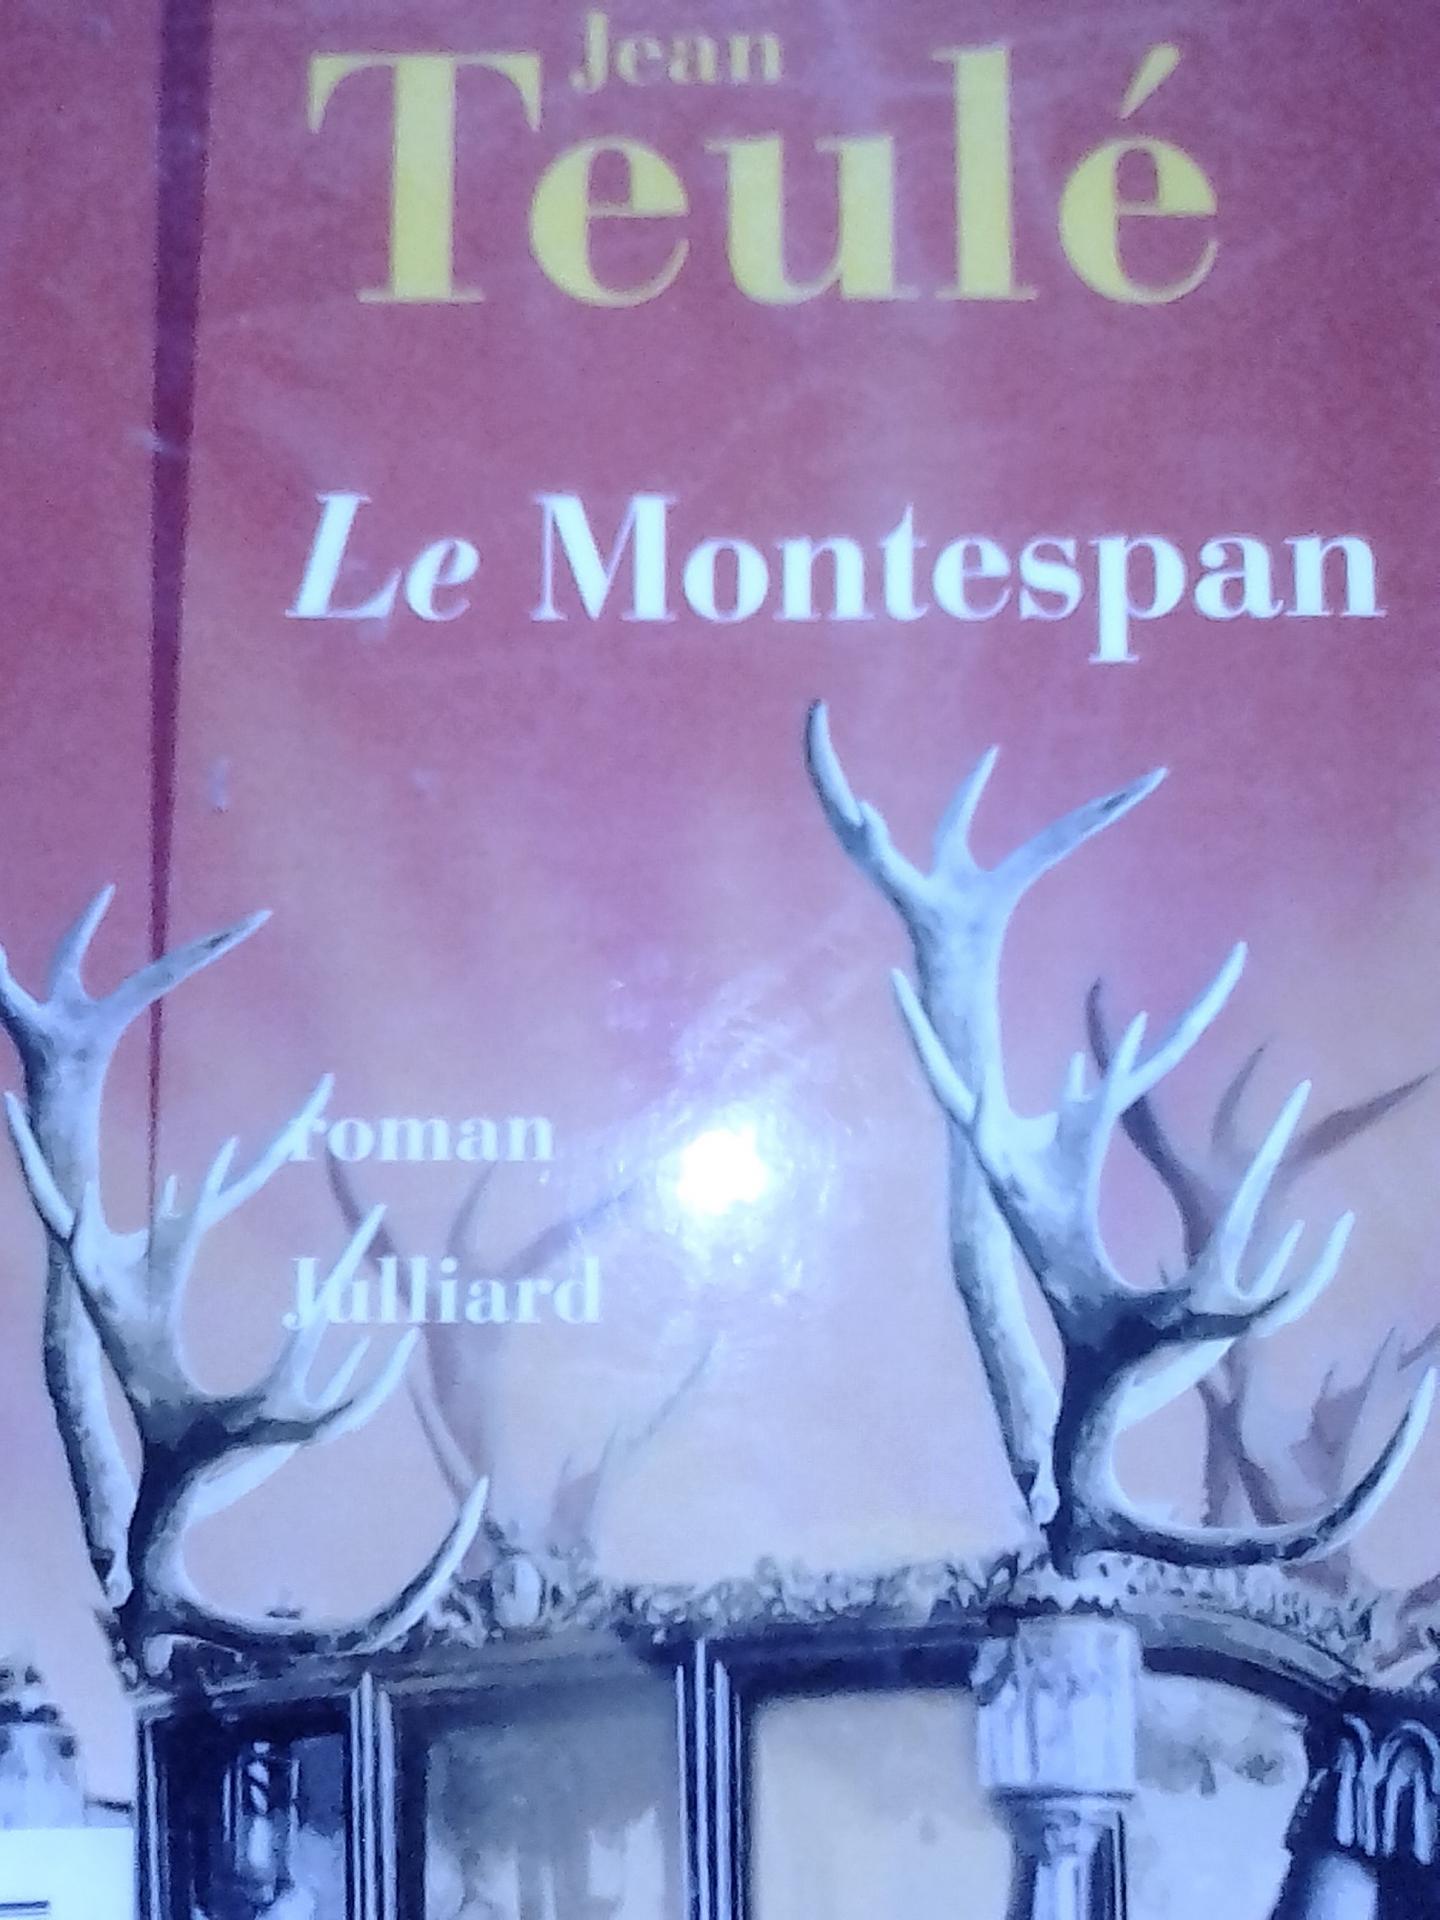 Le Montespan de Jean Teulé, Julliard, 2008